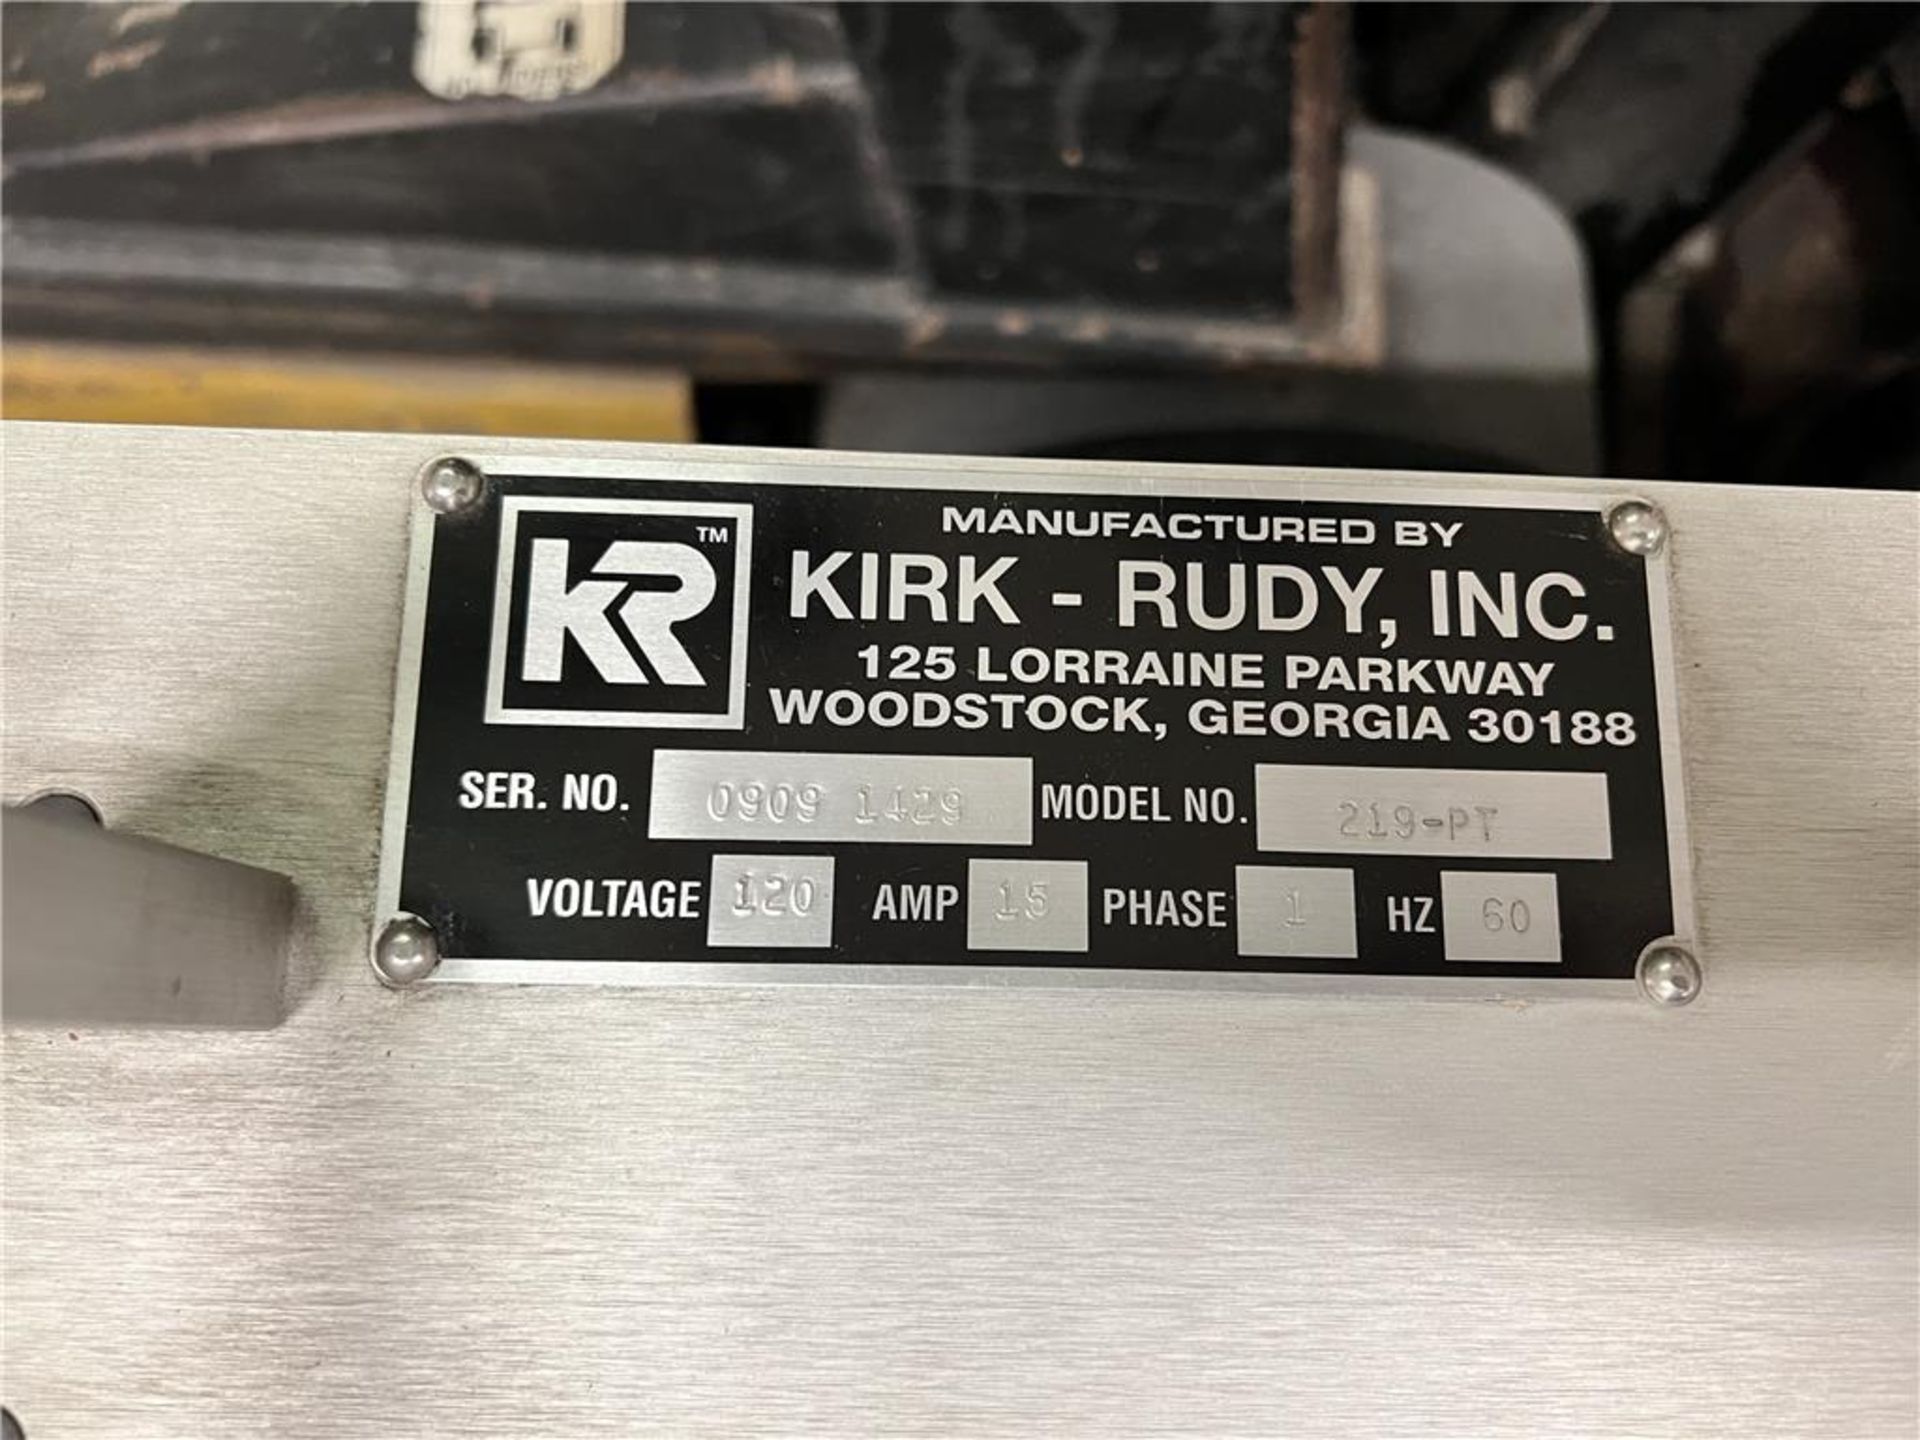 KIRK-RUDY MODEL 219-PT BASE, SINGLE PHASE, 120 VOLT, 15-AMP, S/N: 09091429 - Image 2 of 2